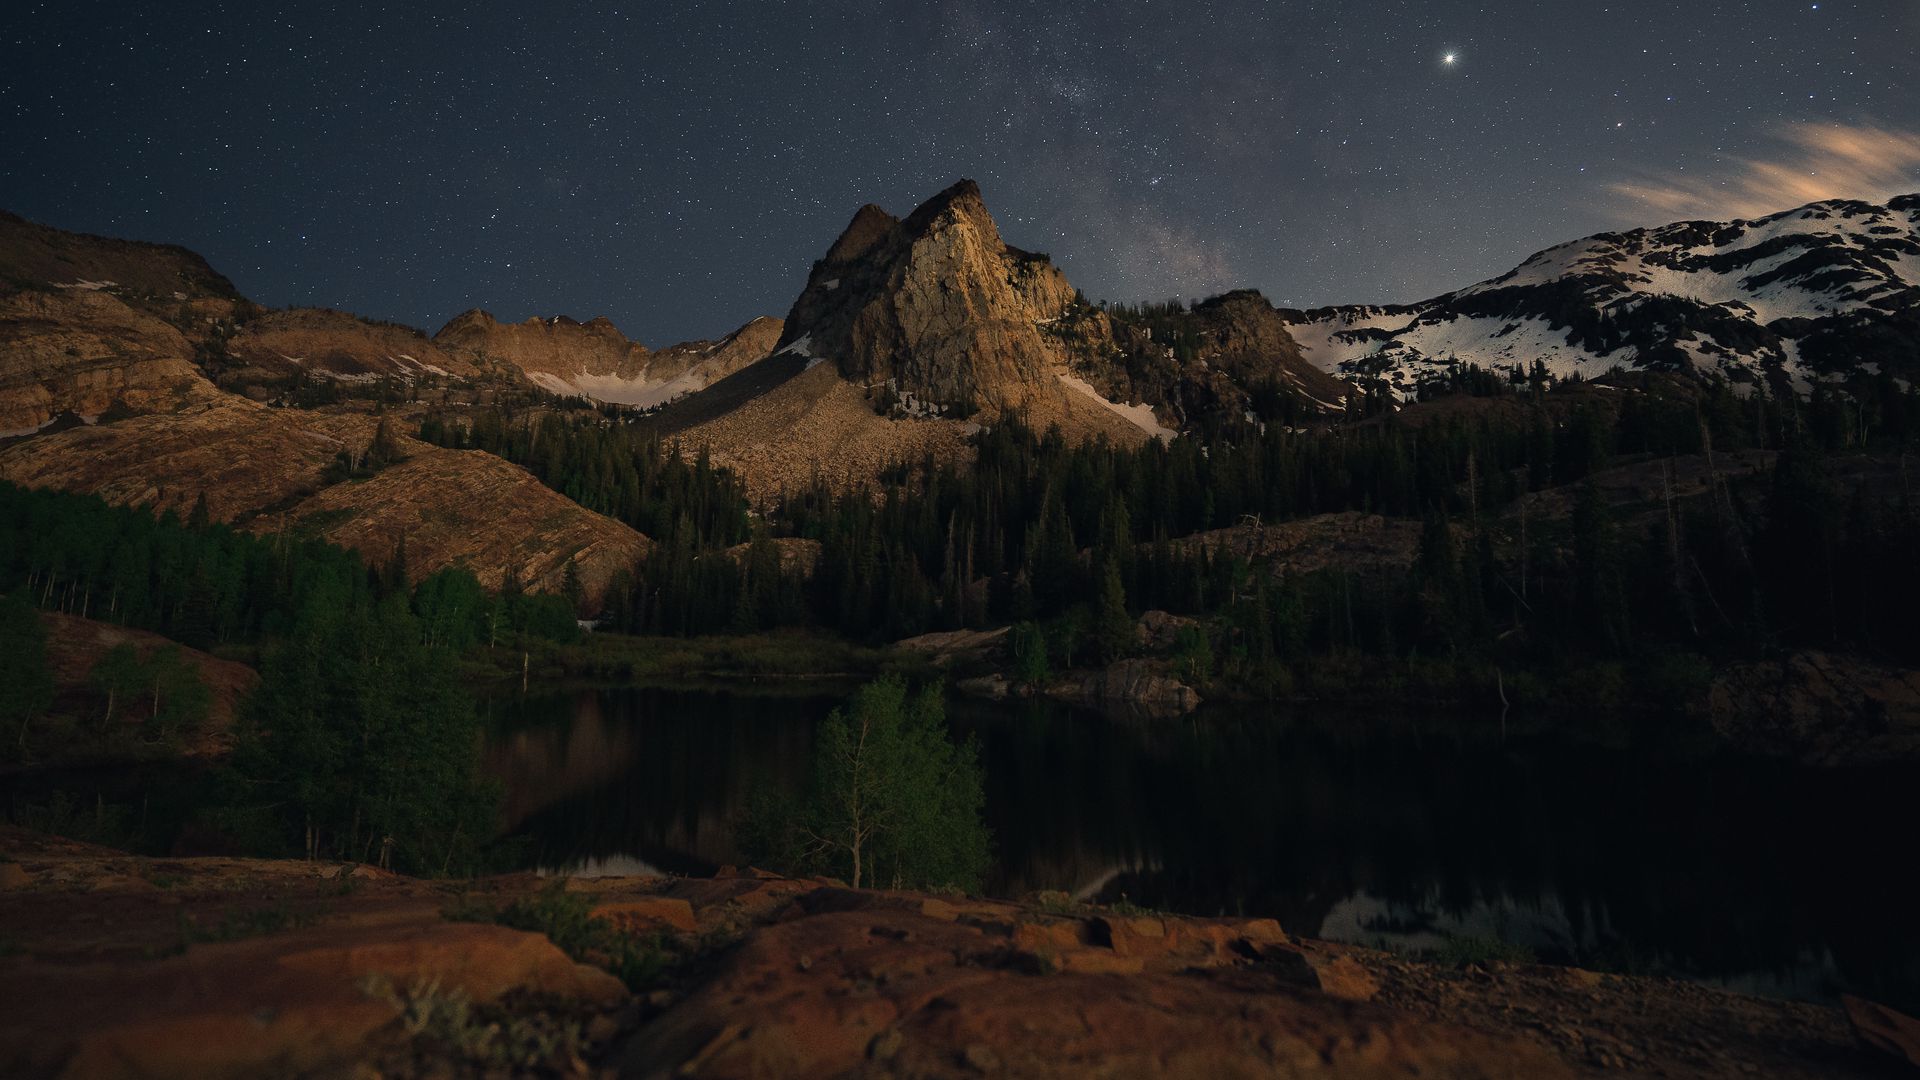 Download wallpaper 1920x1080 mountains, lake, night, landscape, dark